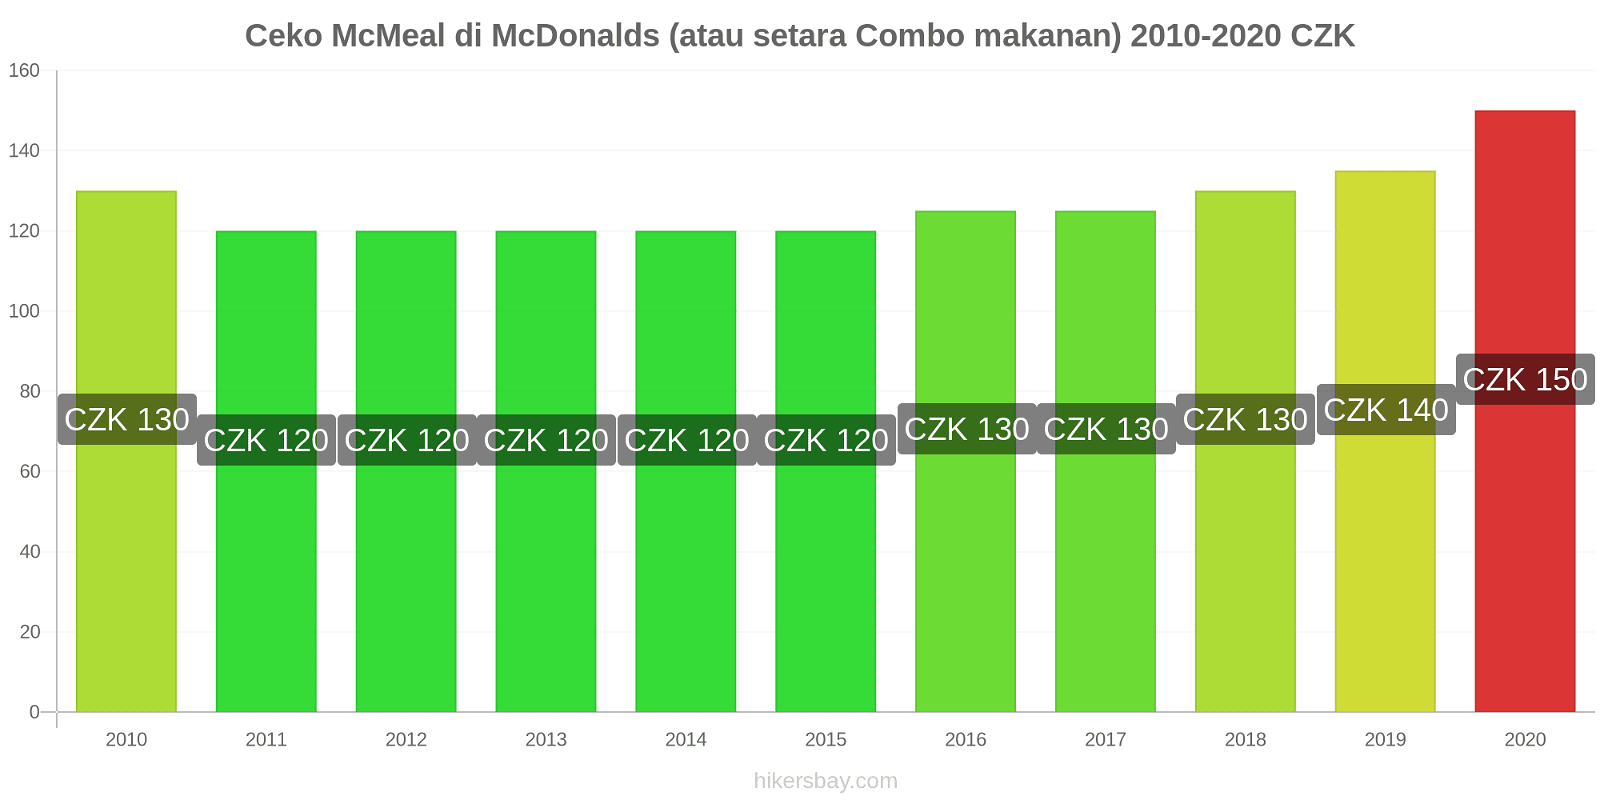 Ceko perubahan harga McMeal di McDonalds (atau setara Combo makanan) hikersbay.com